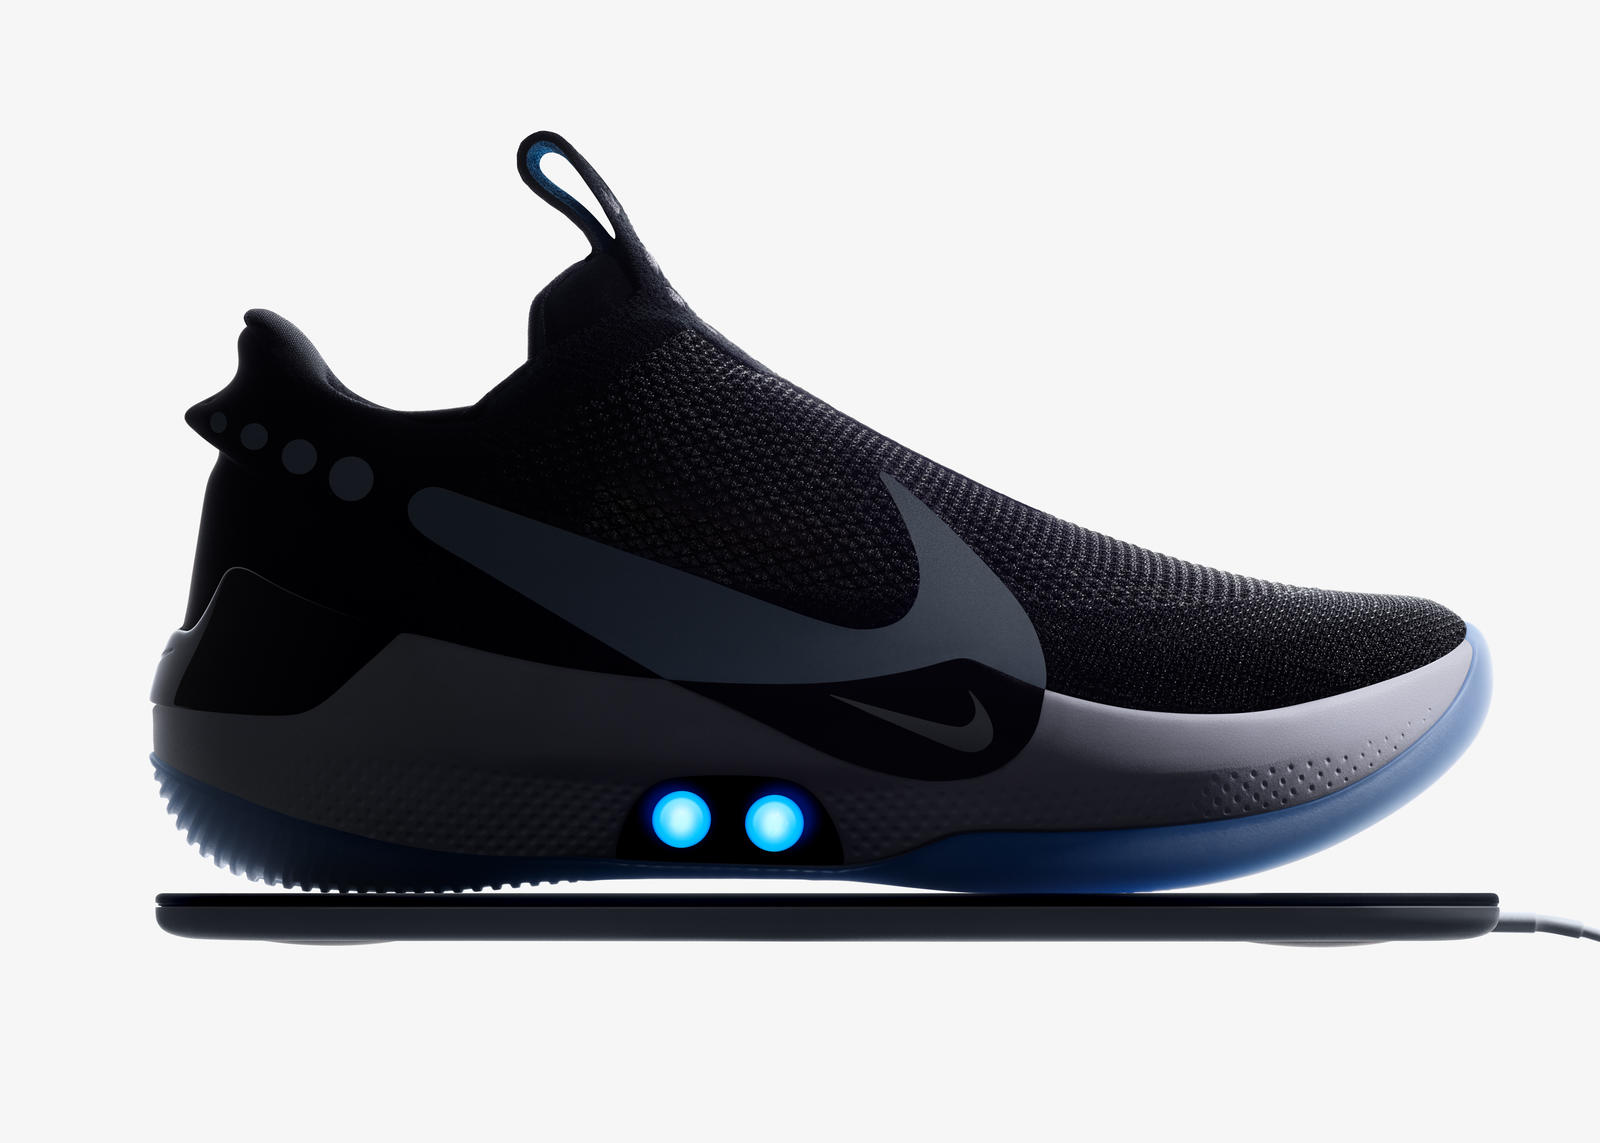 Nike Adapt BB le scarpe autoallaccianti, ecco come funzionano - Digitalic